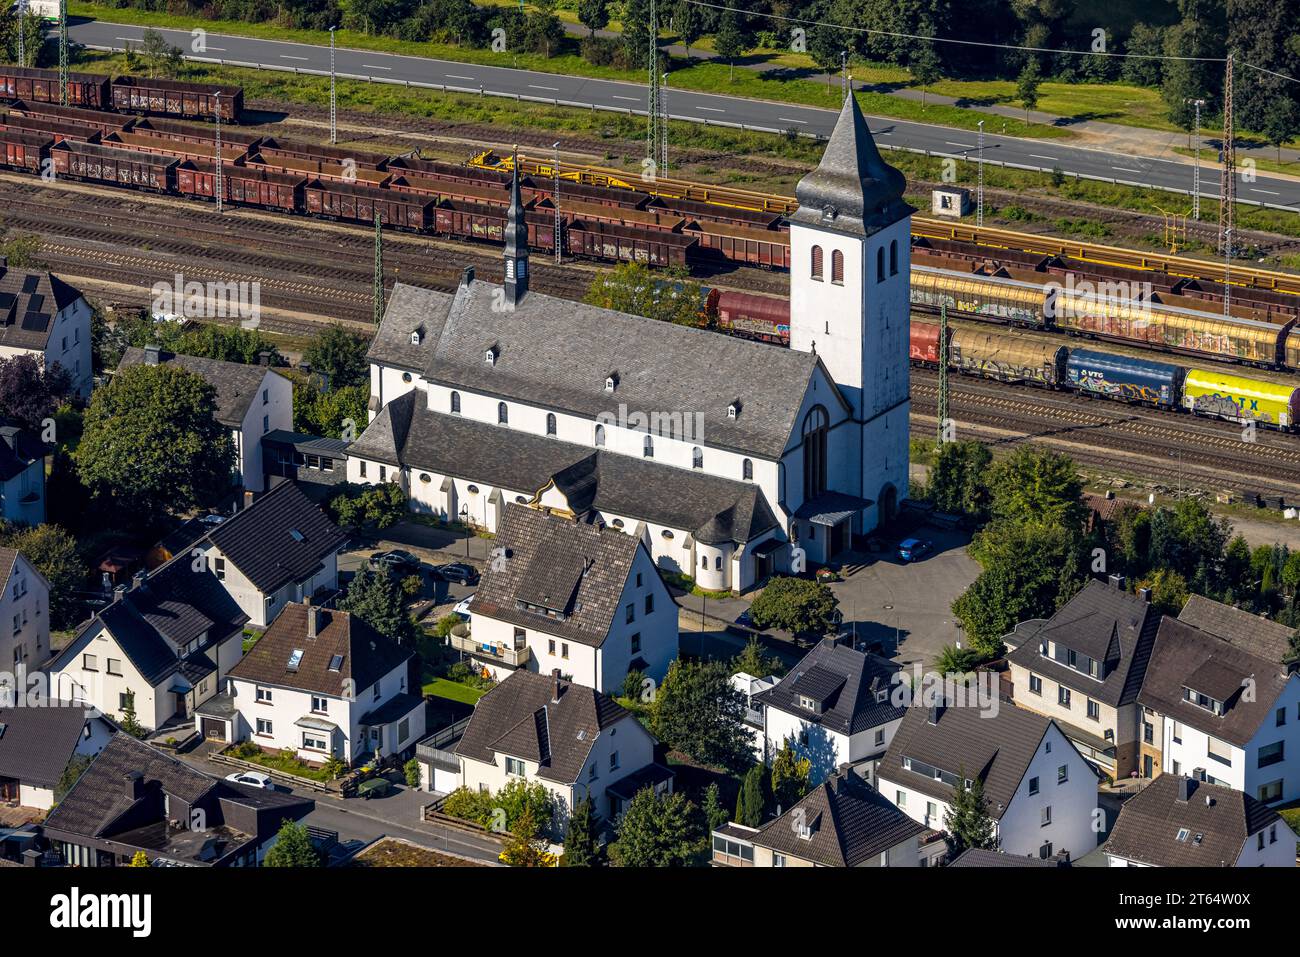 Vista aerea, chiesa parrocchiale cattolica di St Johannes Nepomuk, presso la stazione merci Altfinnentrop, Finnentrop, Sauerland, Renania settentrionale-Vestfalia, la Germania, Foto Stock